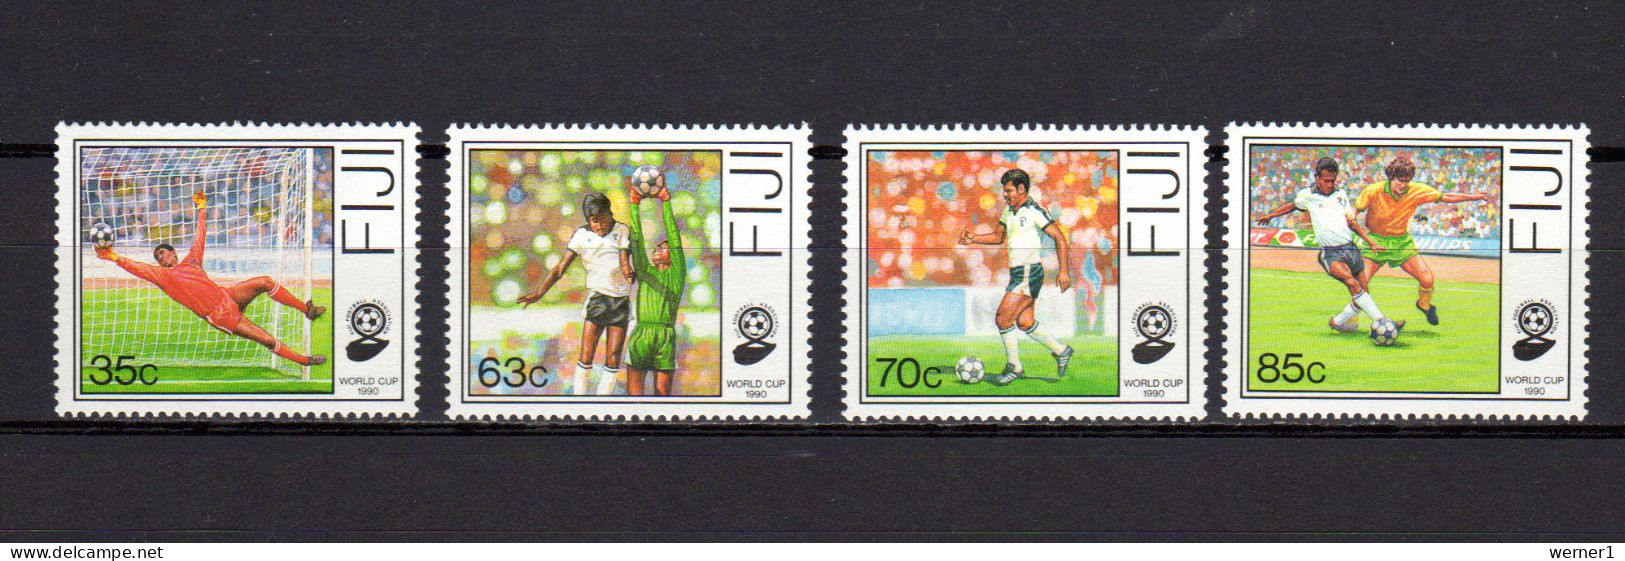 Fiji Islands 1989 Football Soccer World Cup Set Of 4 MNH - 1990 – Italien